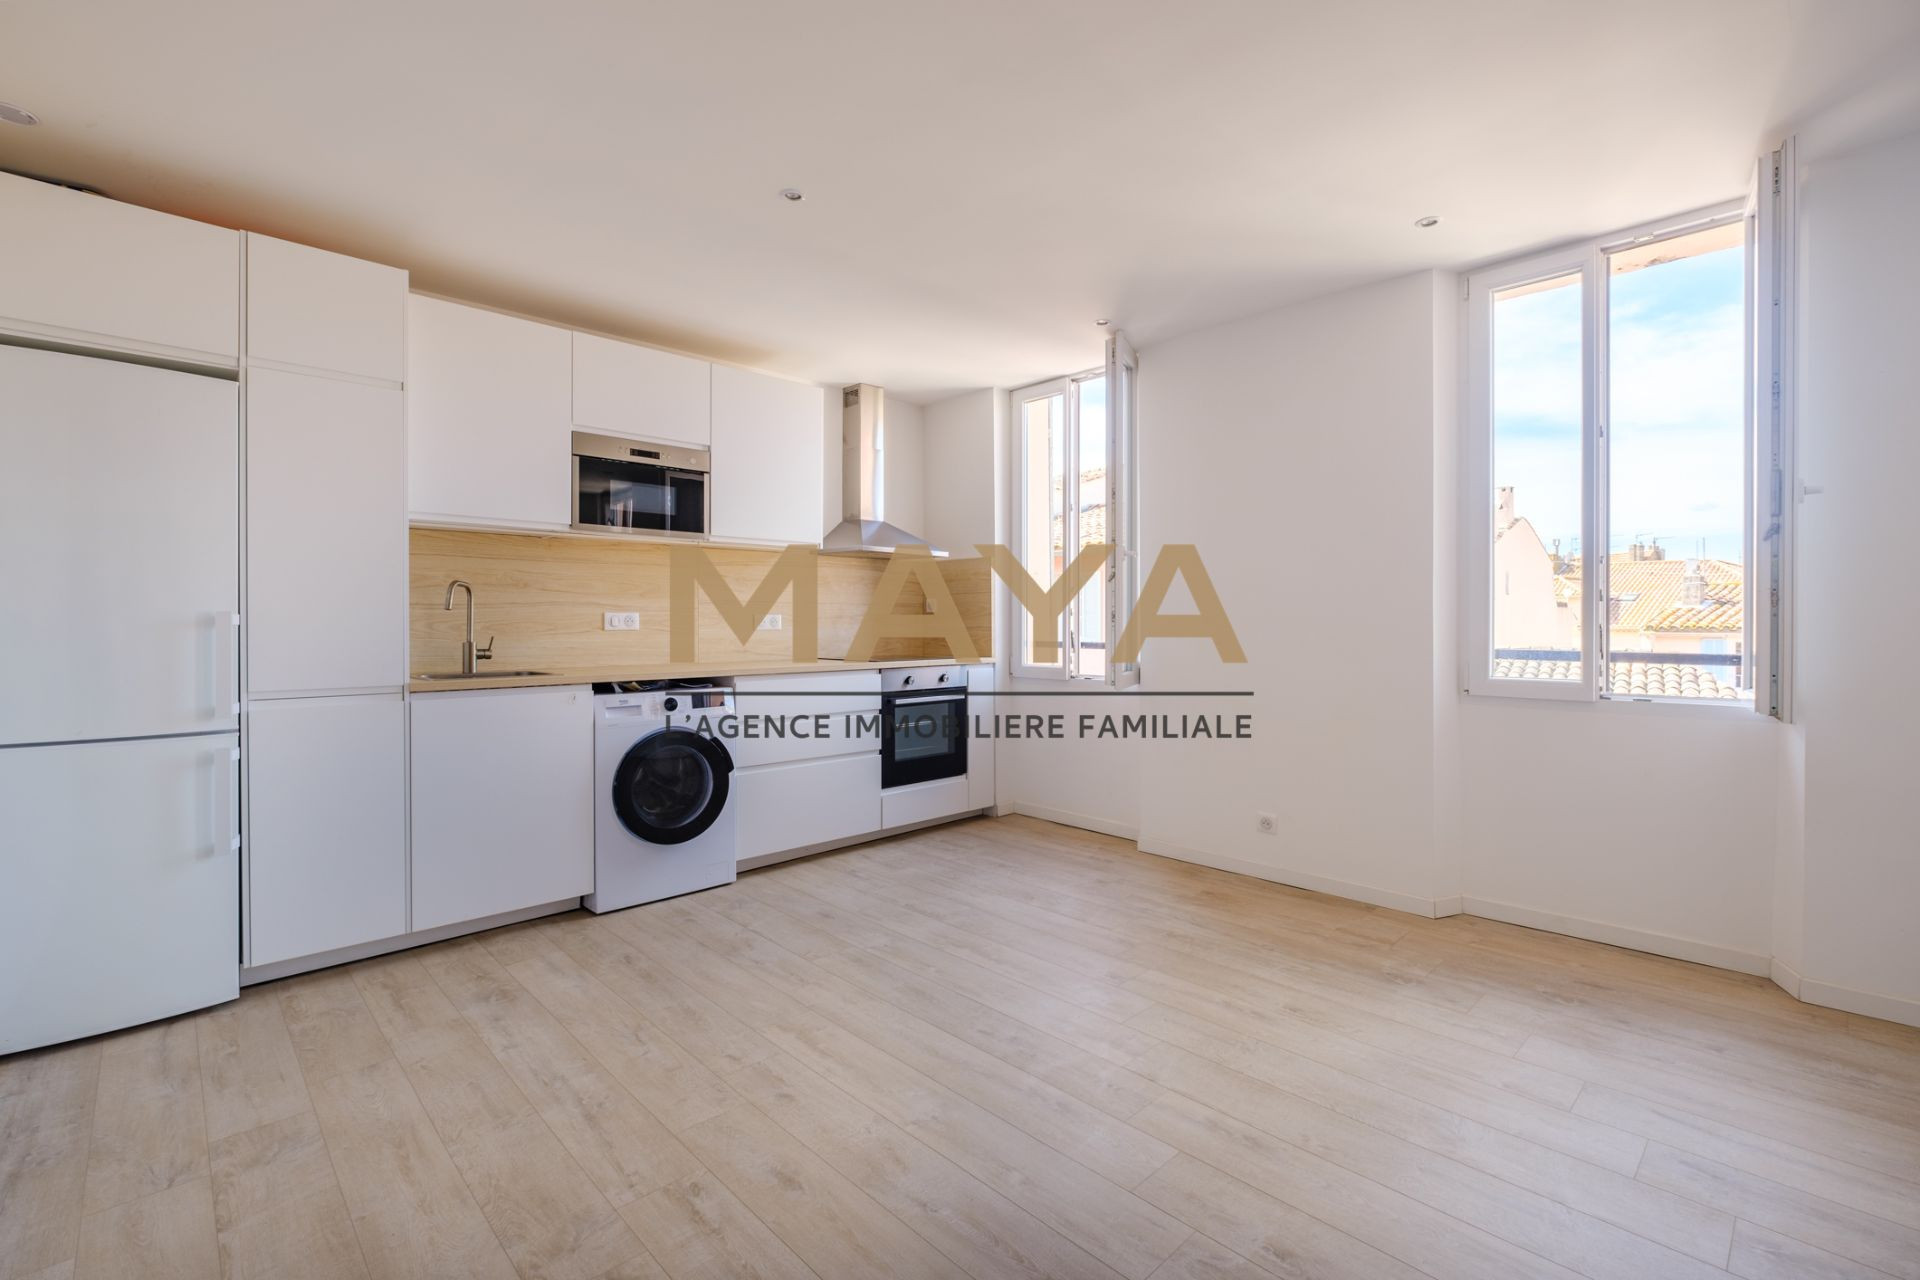 Vente Appartement 43m² à Sainte-Maxime (83120) - Mc Immobilier